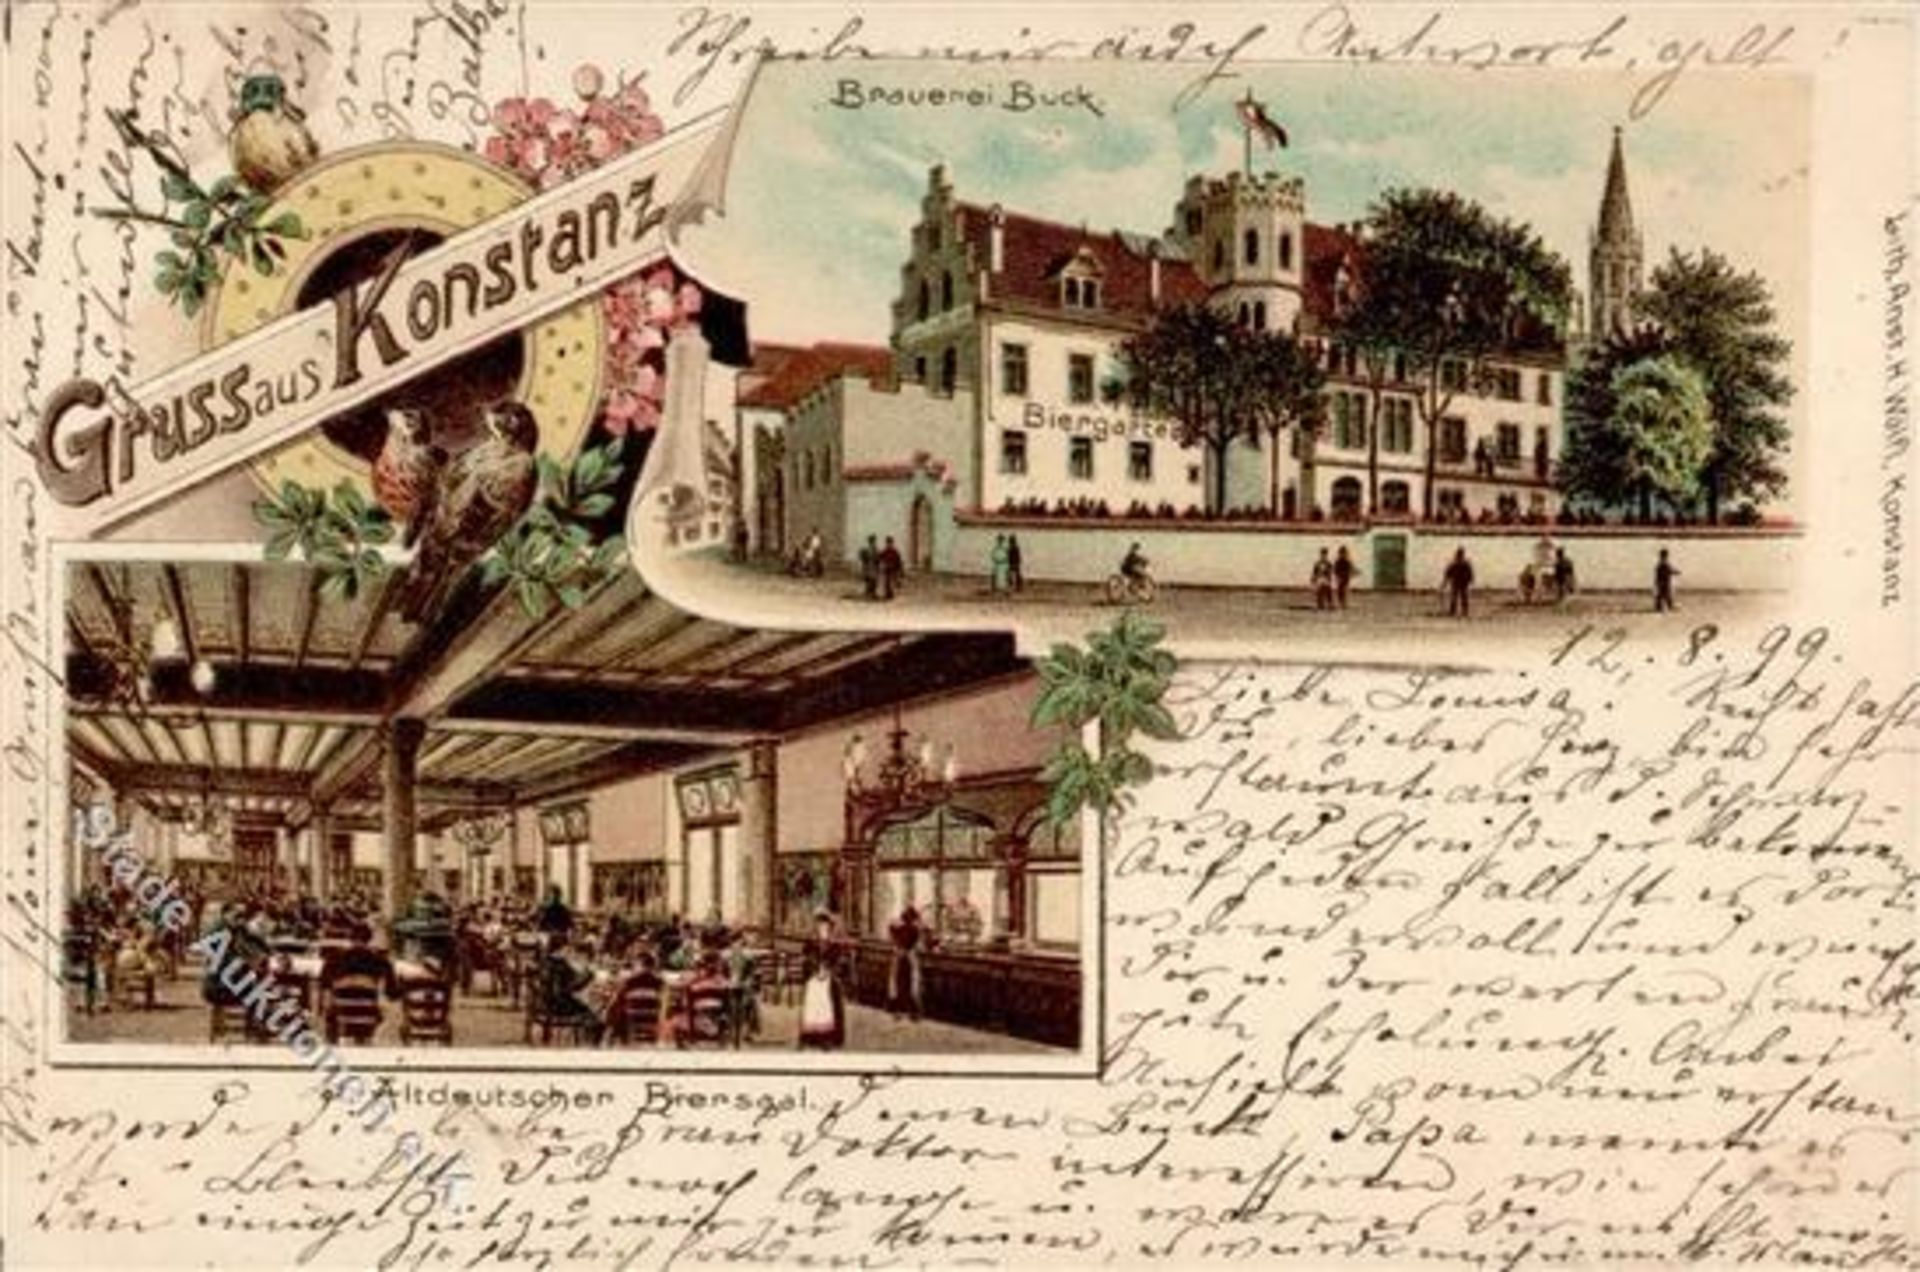 Konstanz (7750) Brauerei Buck Gasthaus 1899 I-IIDieses Los wird in einer online-Auktion ohne